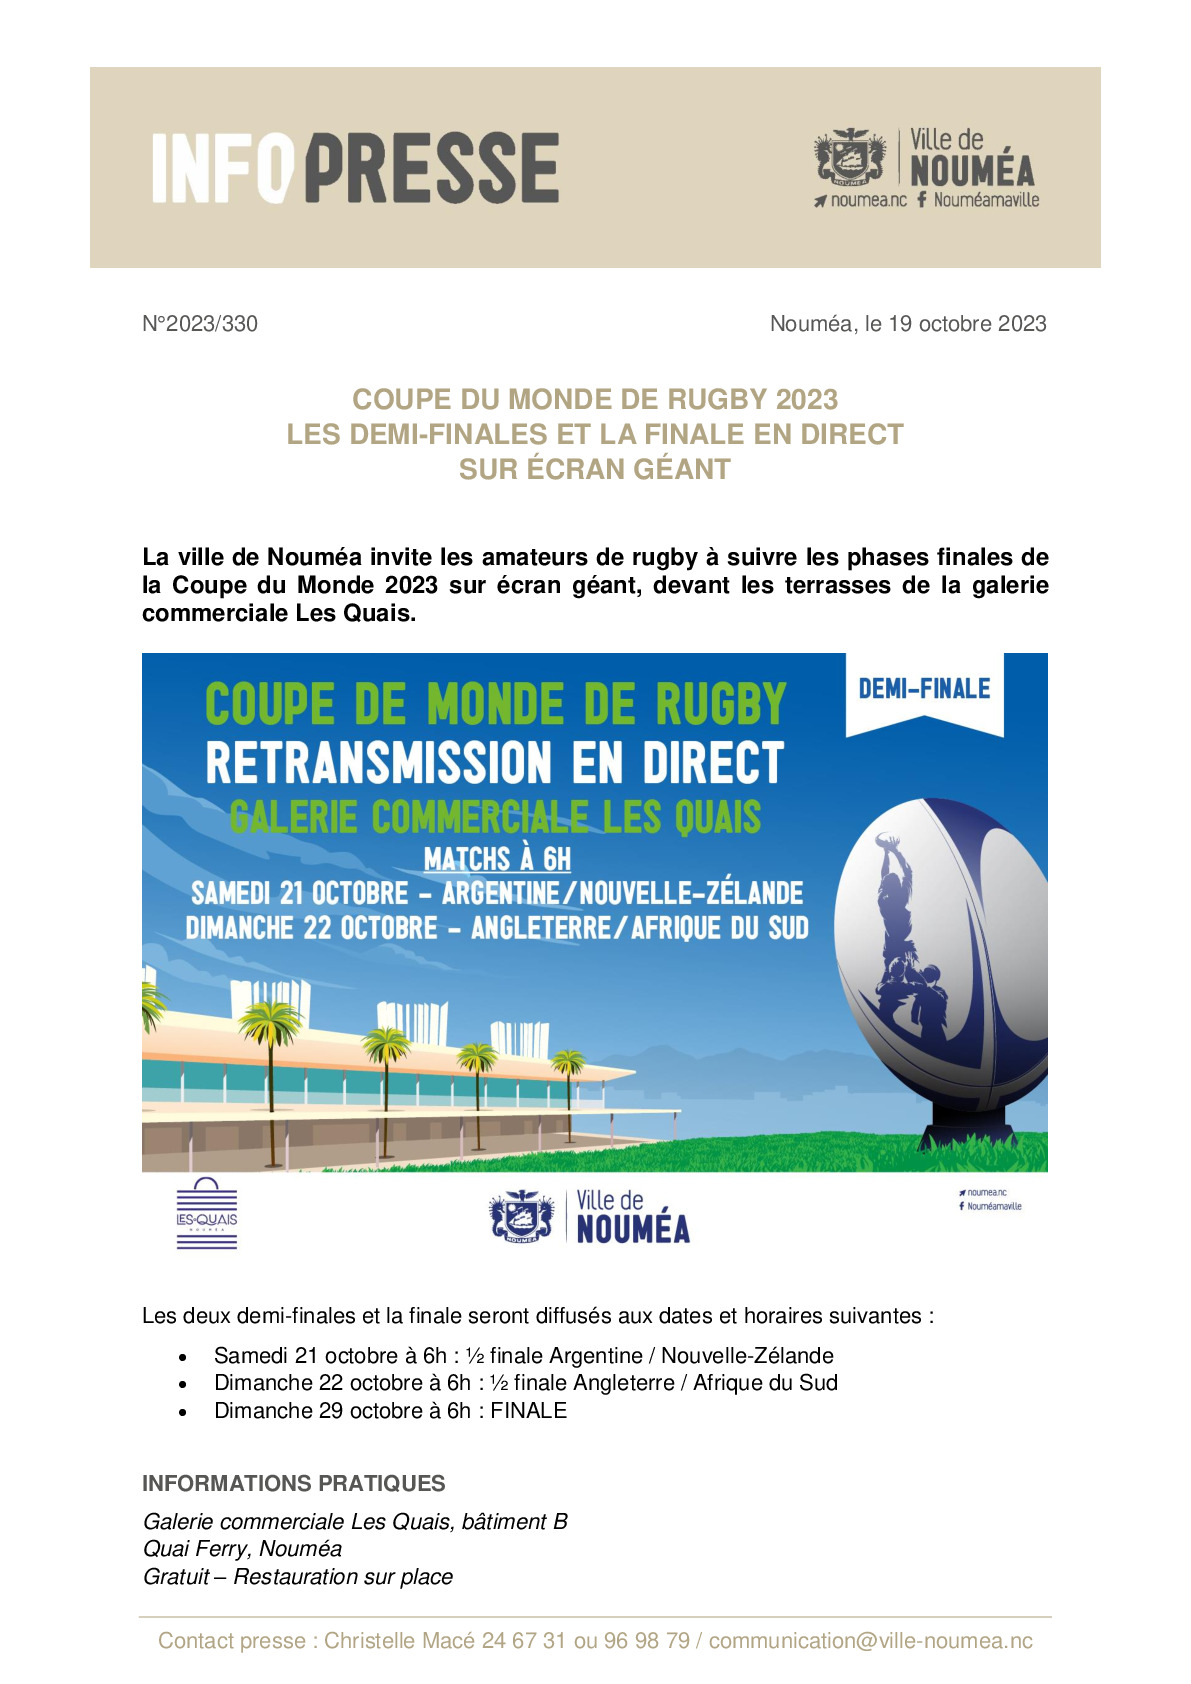 IP 330 Ecran géant - Coupe du monde de rugby.pdf